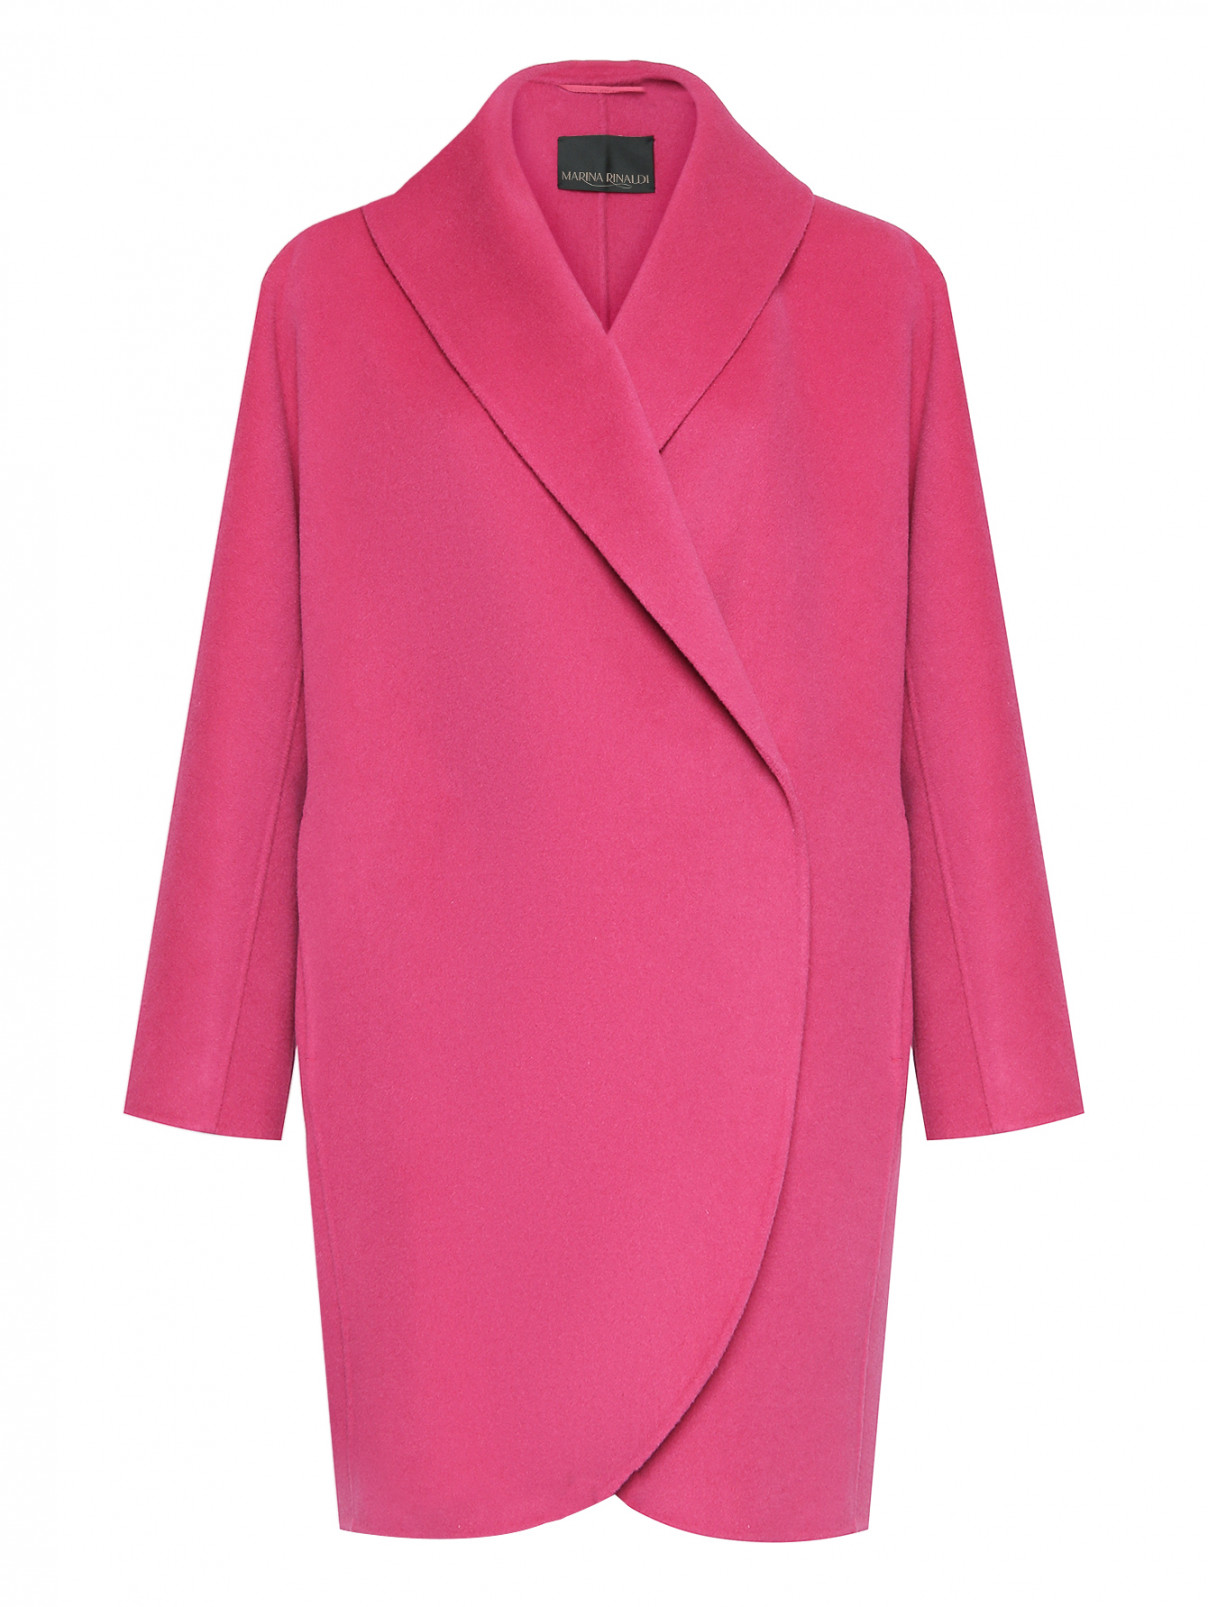 Пальто с круглым воротом Marina Rinaldi  –  Общий вид  – Цвет:  Фиолетовый